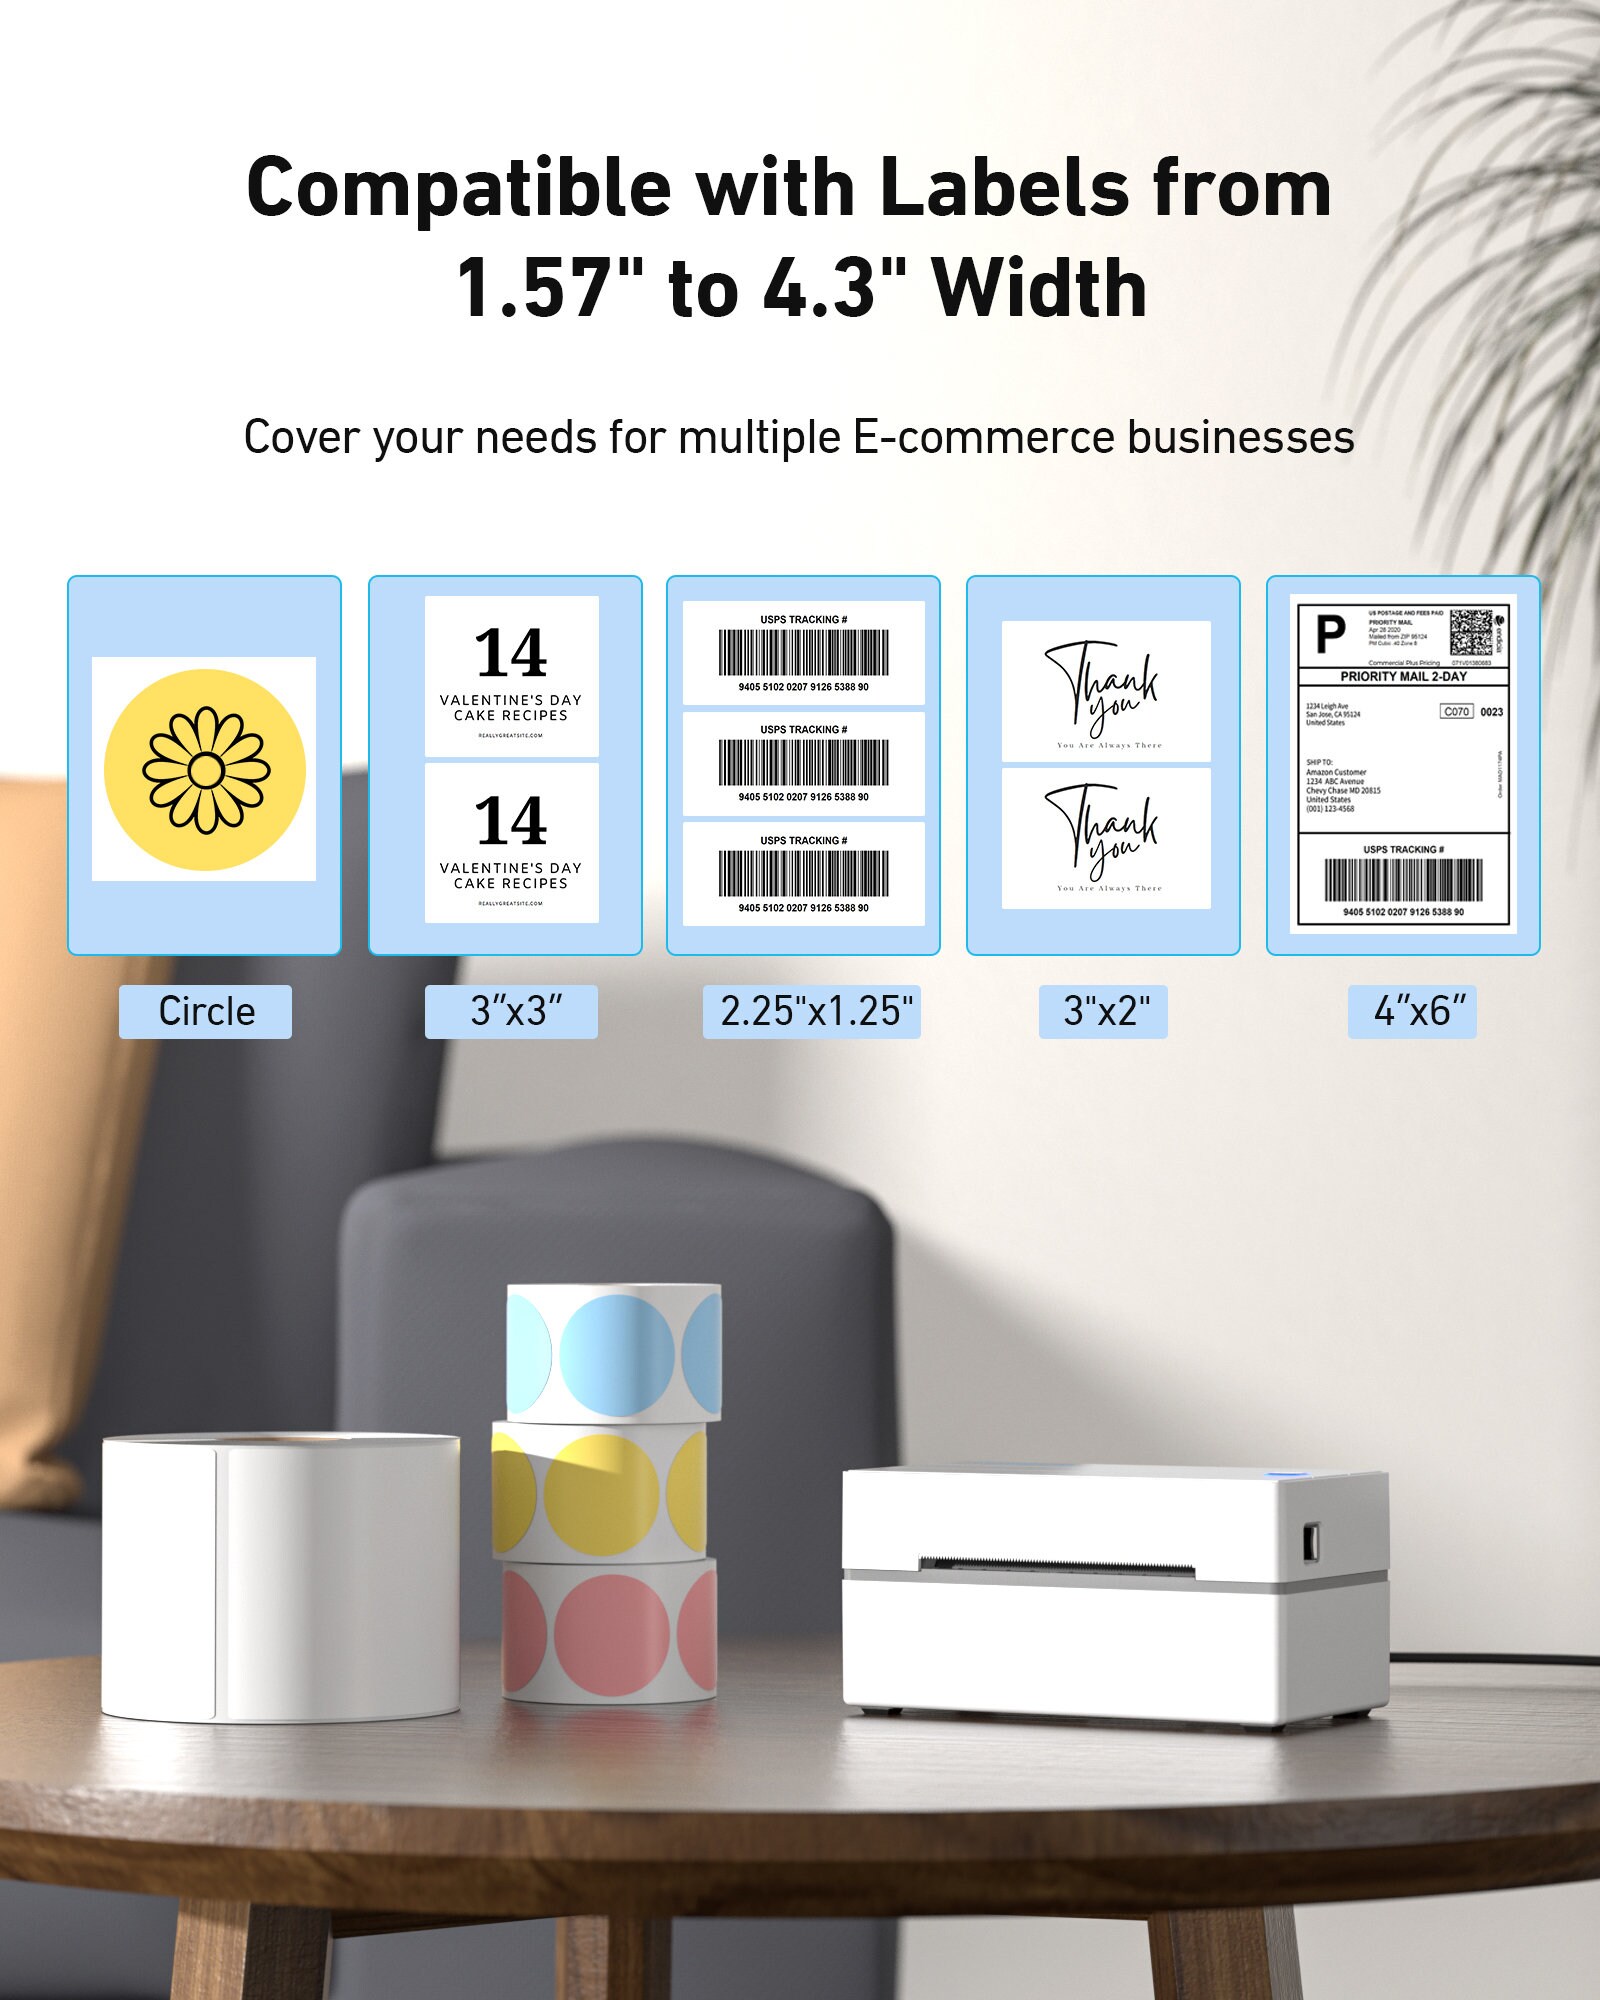 MUNBYN Imprimante d'étiquettes thermique 203 ppp, 4 x 6 USB imprimante  d'étiquettes thermique, imprimante d'étiquettes pour emballage maison  petite entreprise compatible avec Mac, Windows -  Canada